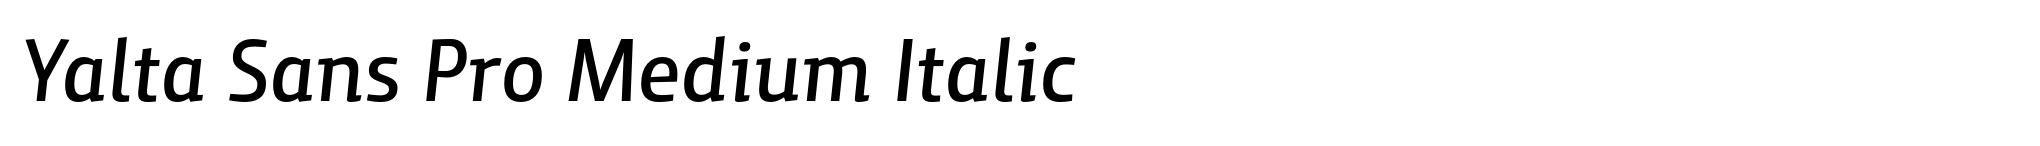 Yalta Sans Pro Medium Italic image